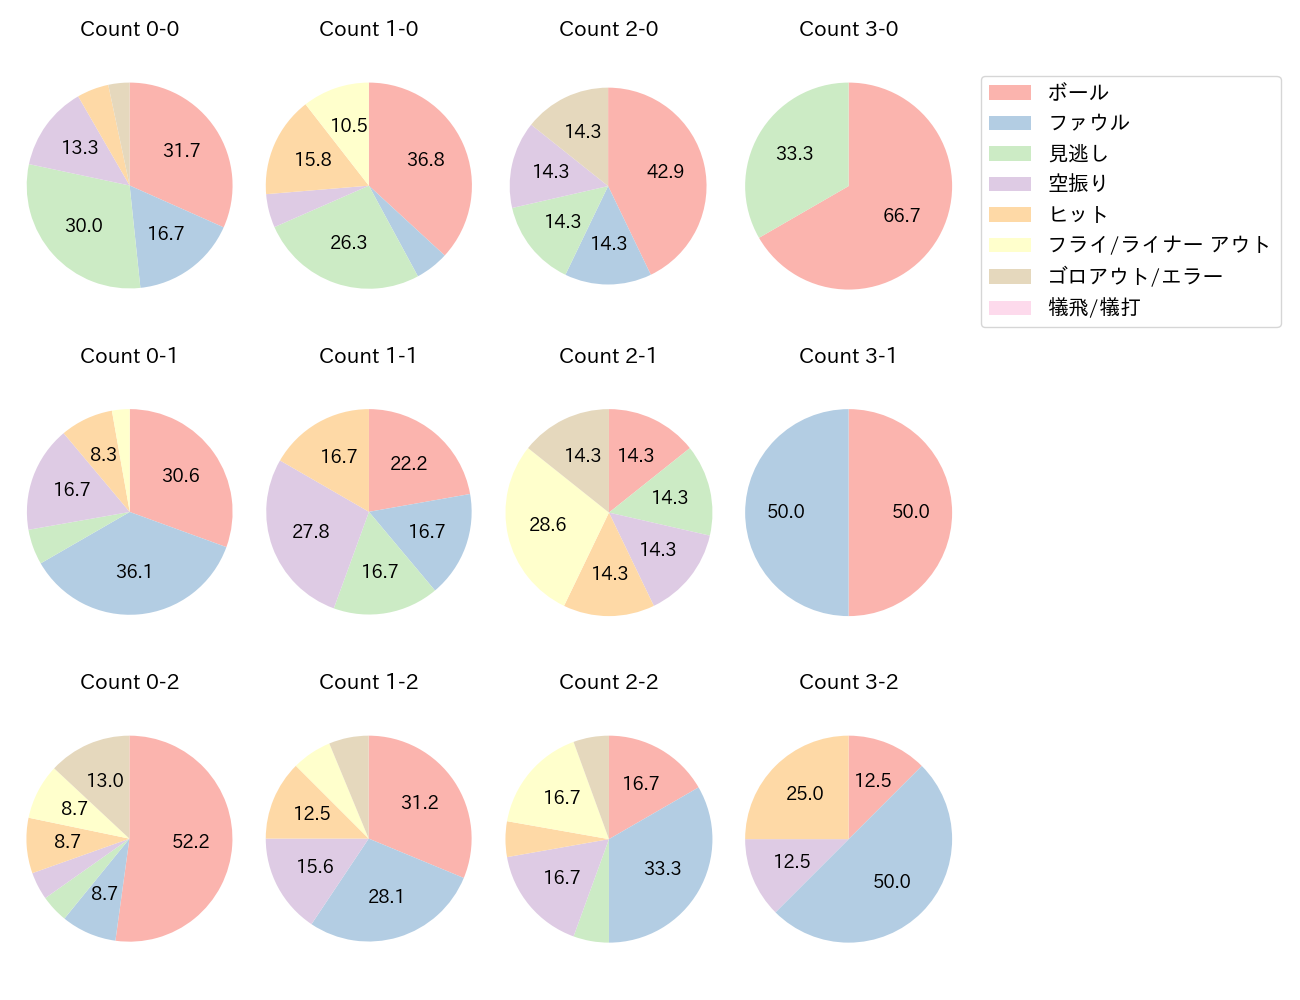 吉川 尚輝の球数分布(2021年5月)